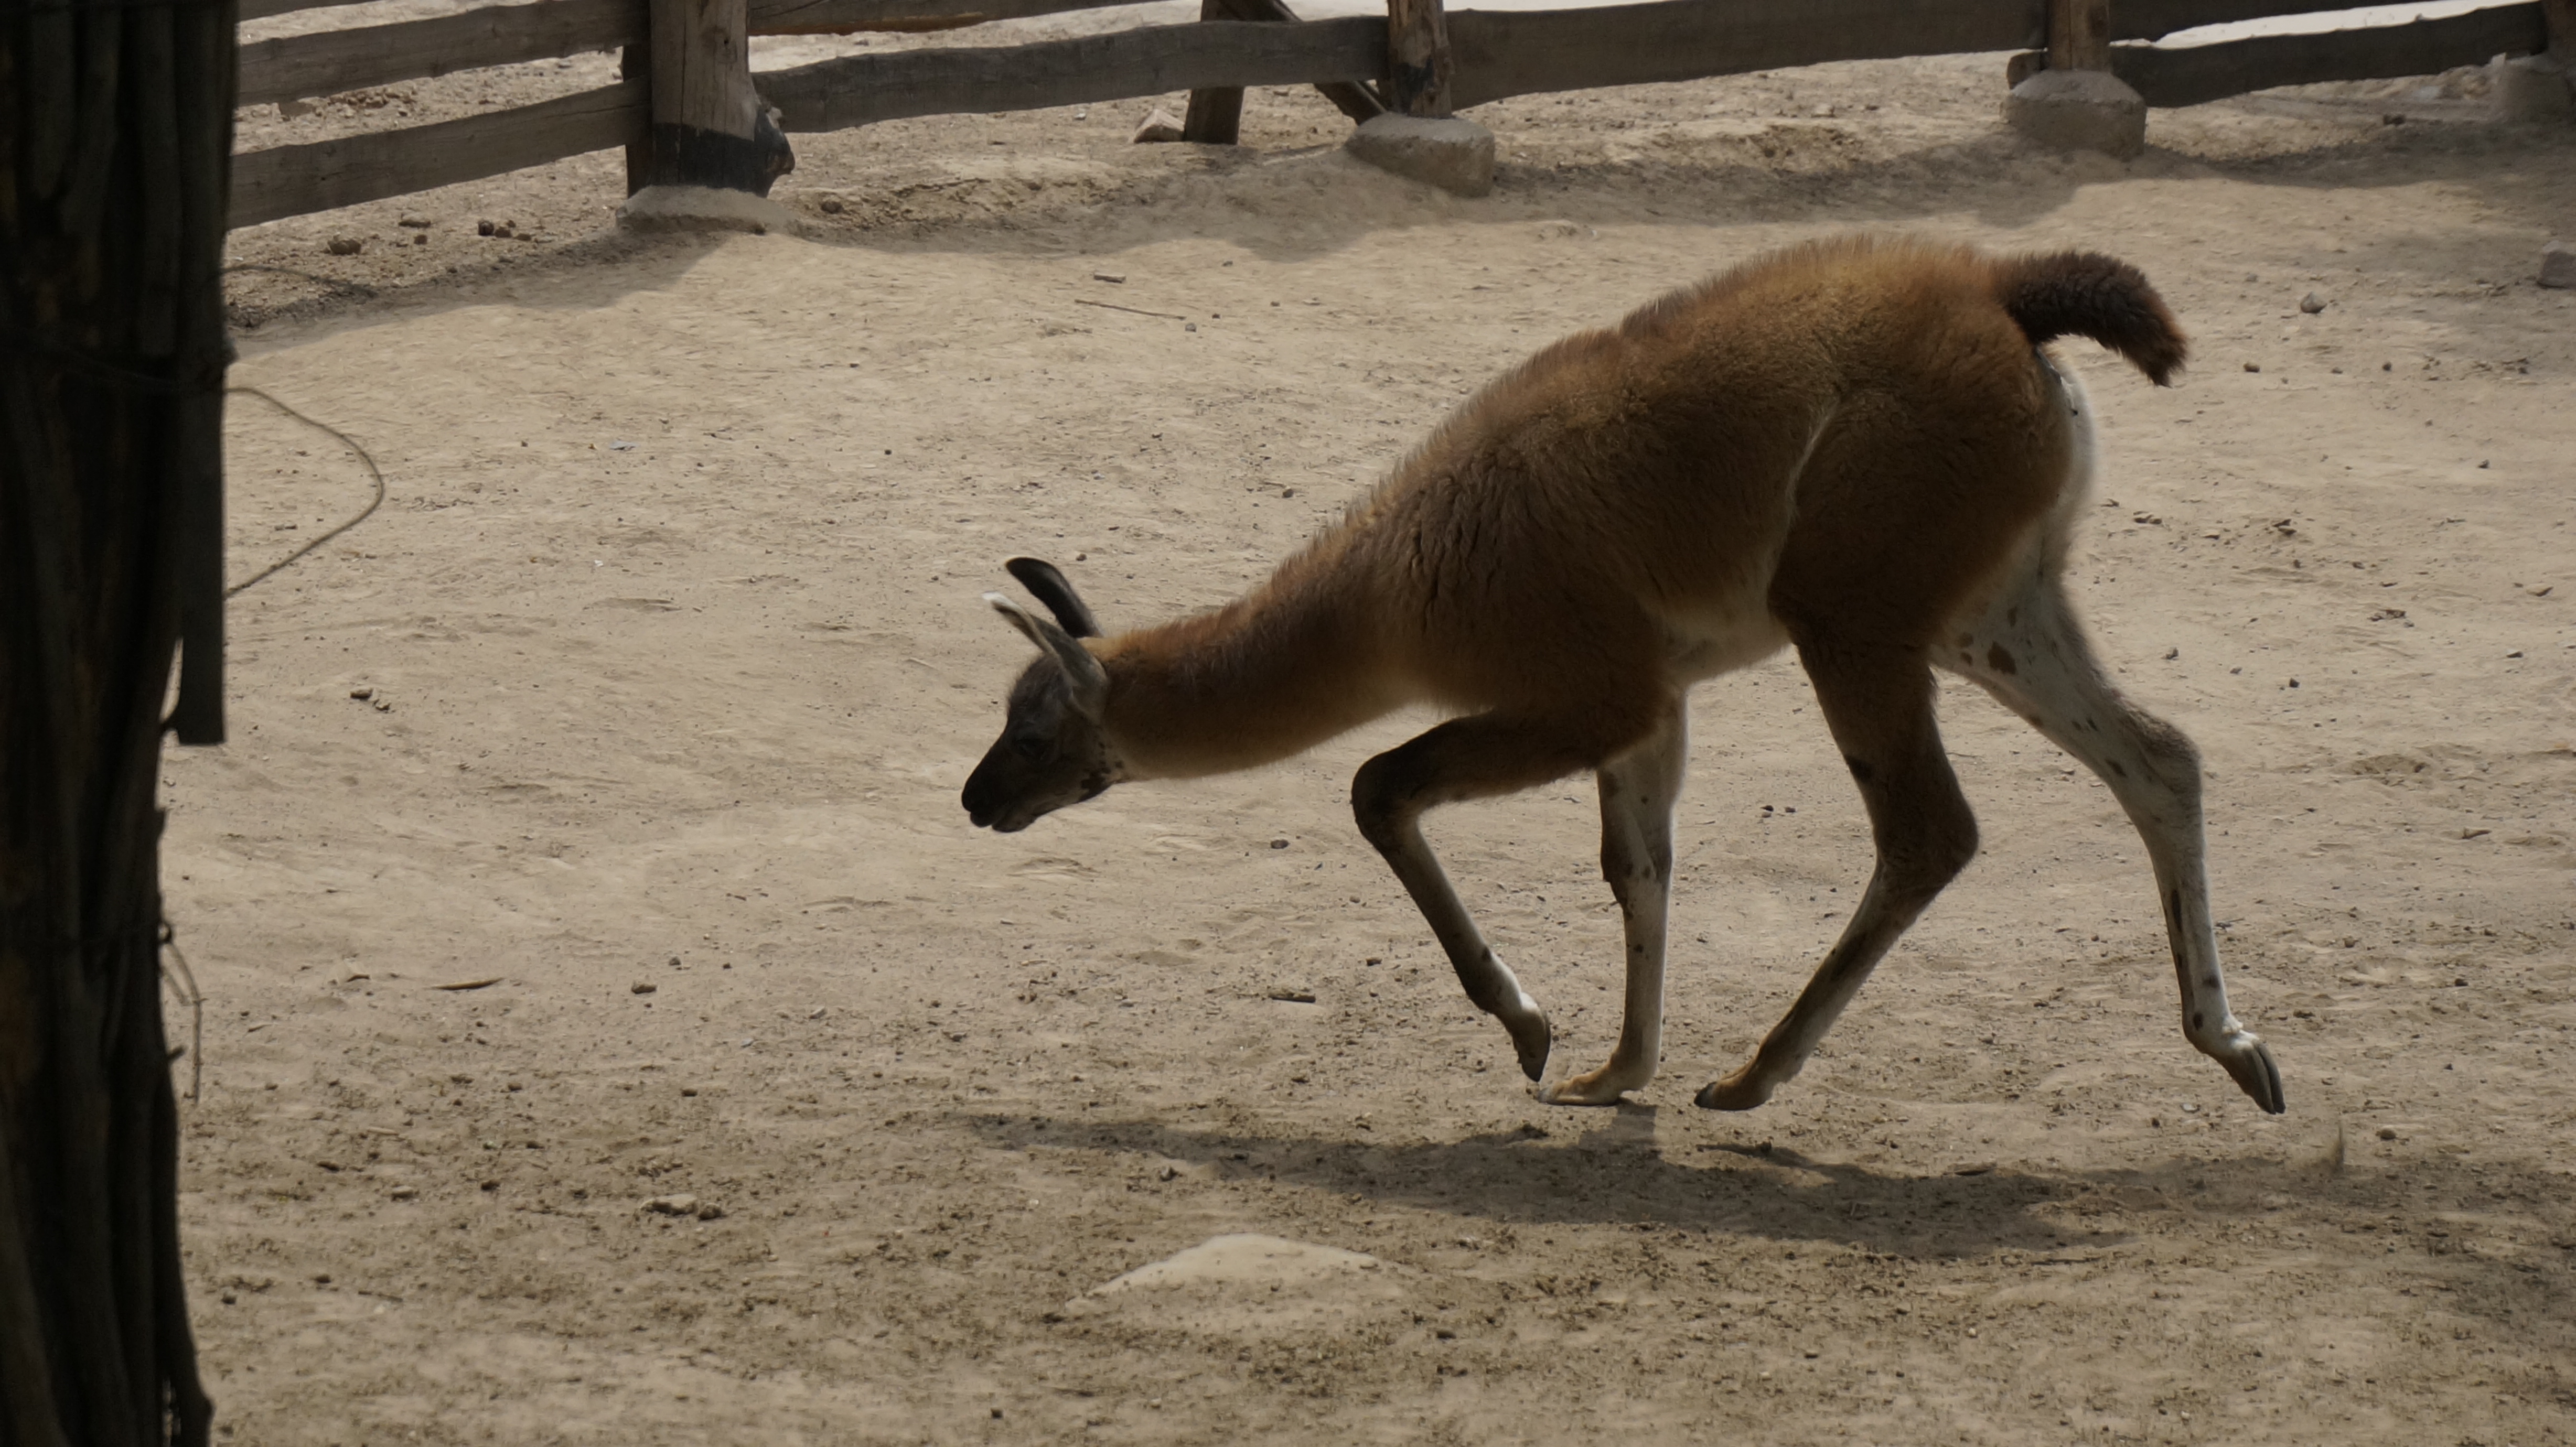 【携程攻略】太原太原动物园景点,总体三颗星，那些小动物都没得吃，草是枯的，感觉马都是饿瘦了，骆驼…